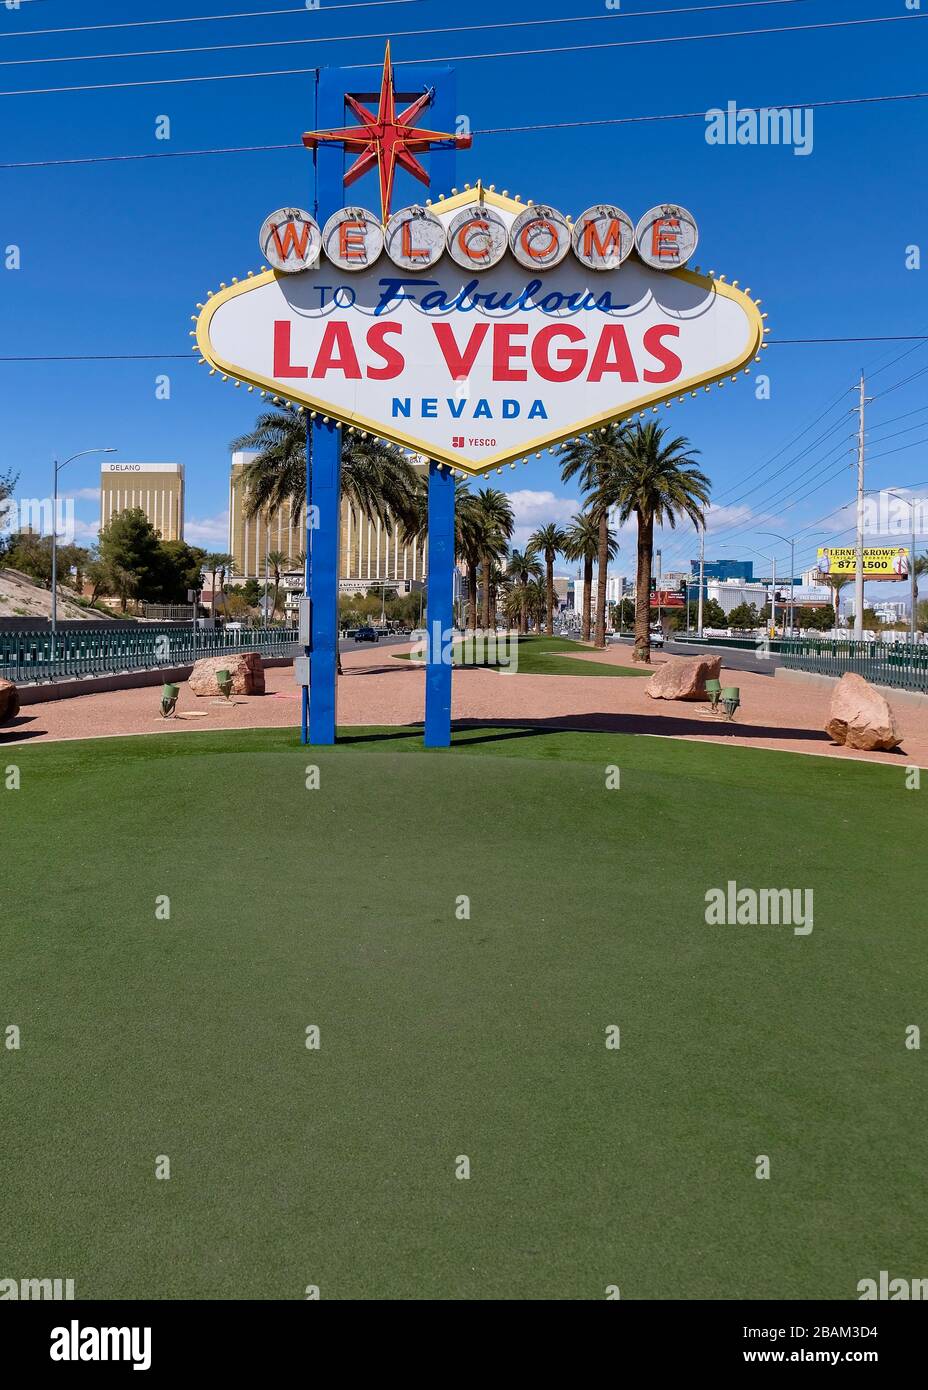 Die meist überfüllte Stelle des berühmten Las Vegas Zeichens erscheint verlassen, aufgrund der sozialen Distanzierungsmaßnahmen von Nevada, um die Verbreitung von COVID-19 zu bekämpfen Stockfoto